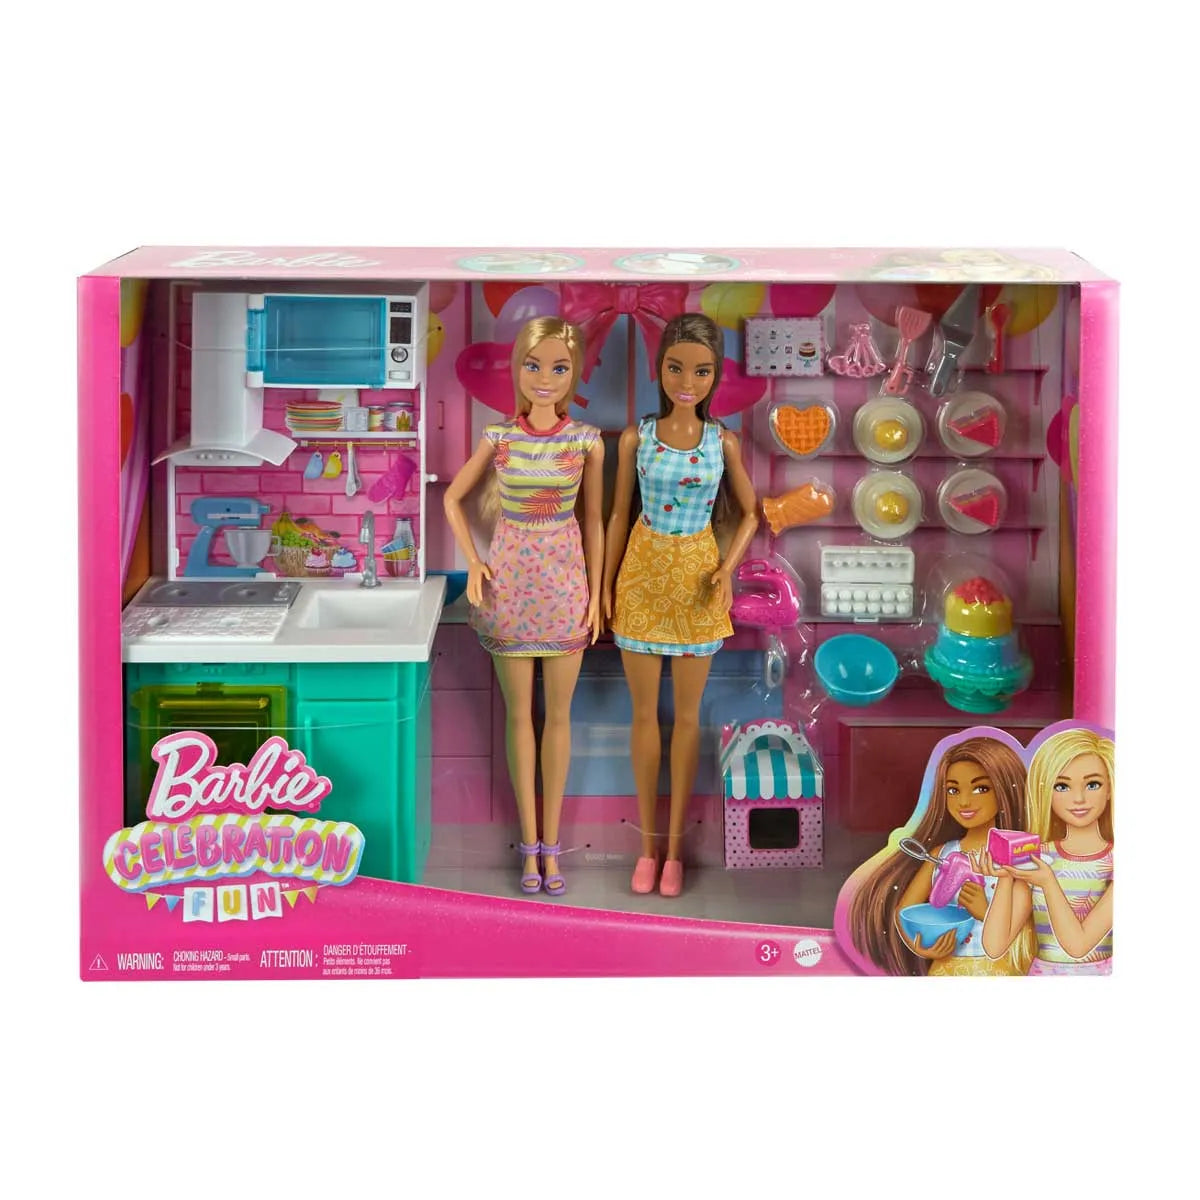 Juego De Comidita Set Cumpleaños Barbie Miniplay (2975)